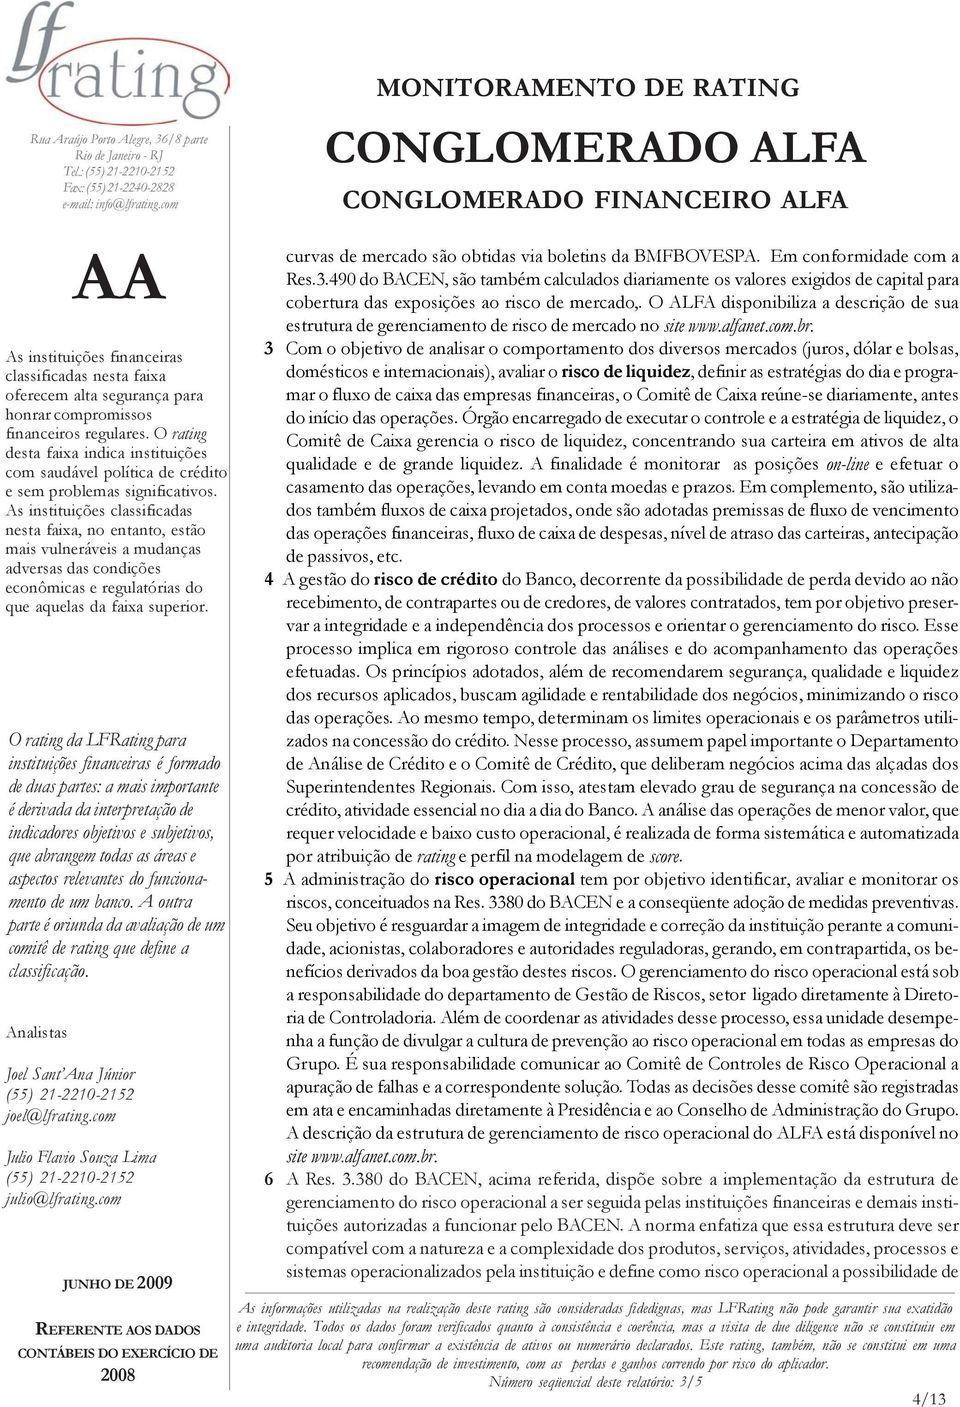 O ALFA disponibiliza a descrição de sua estrutura de gerenciamento de risco de mercado no site www.alfanet.com.br.